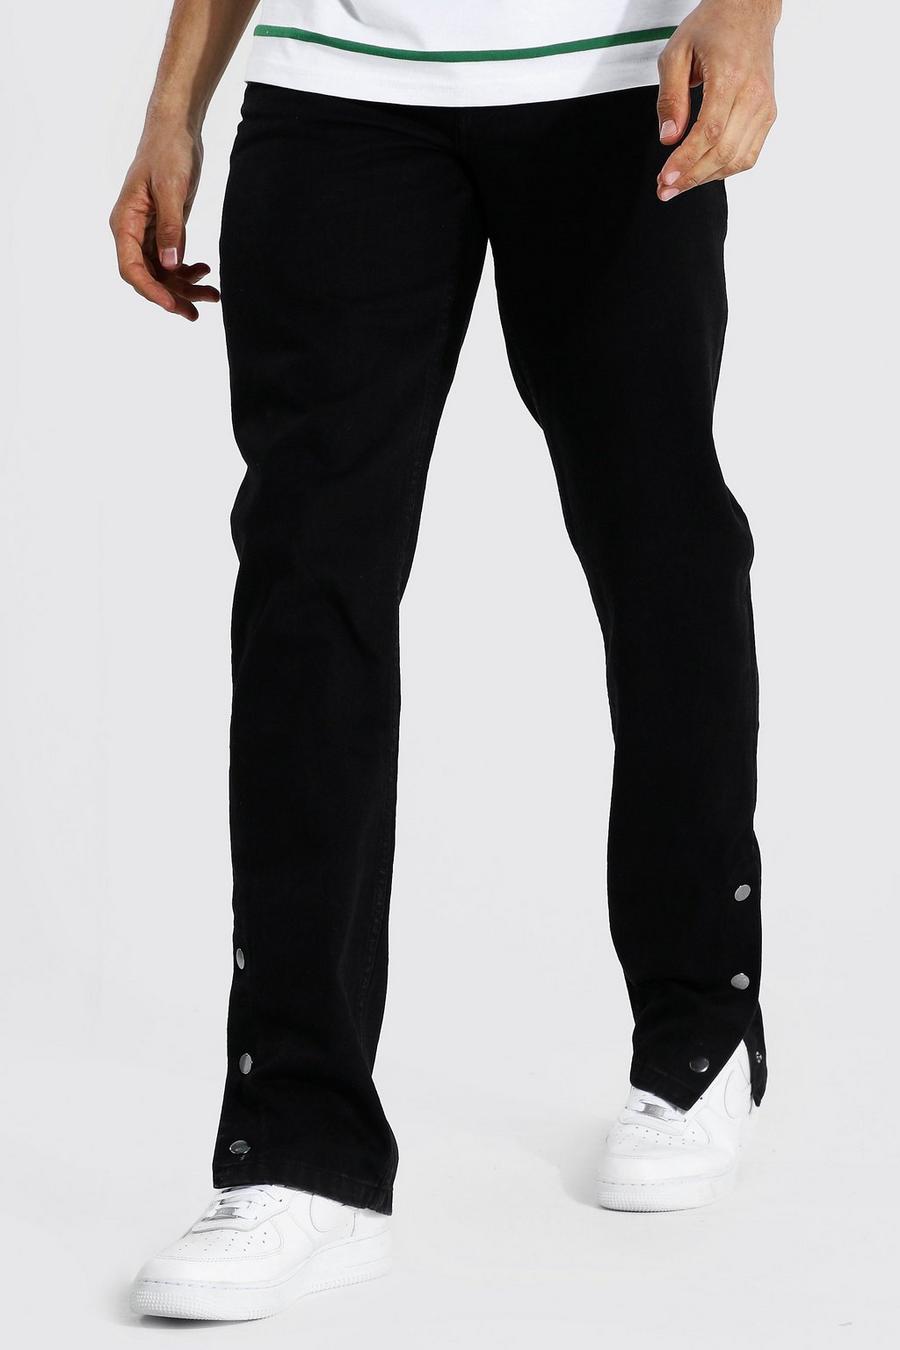 שחור nero ג'ינס בגזרה ישרה עם מכפלת תיקתקים לגברים גבוהים